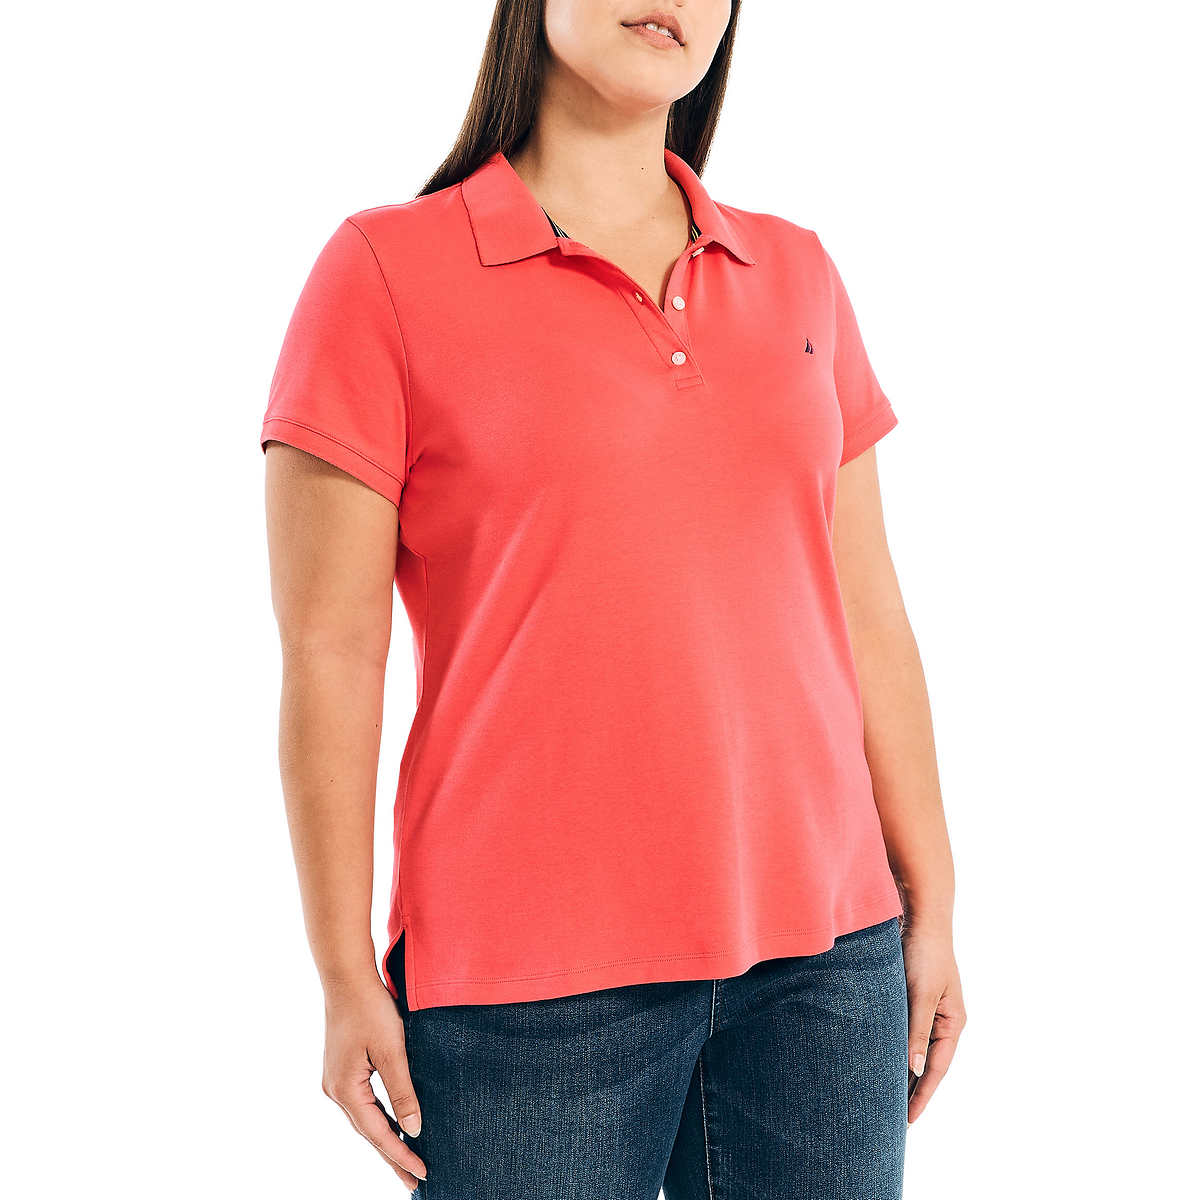 Nautica Women's Lightweight Cotton Short Sleeve Polo Shirt